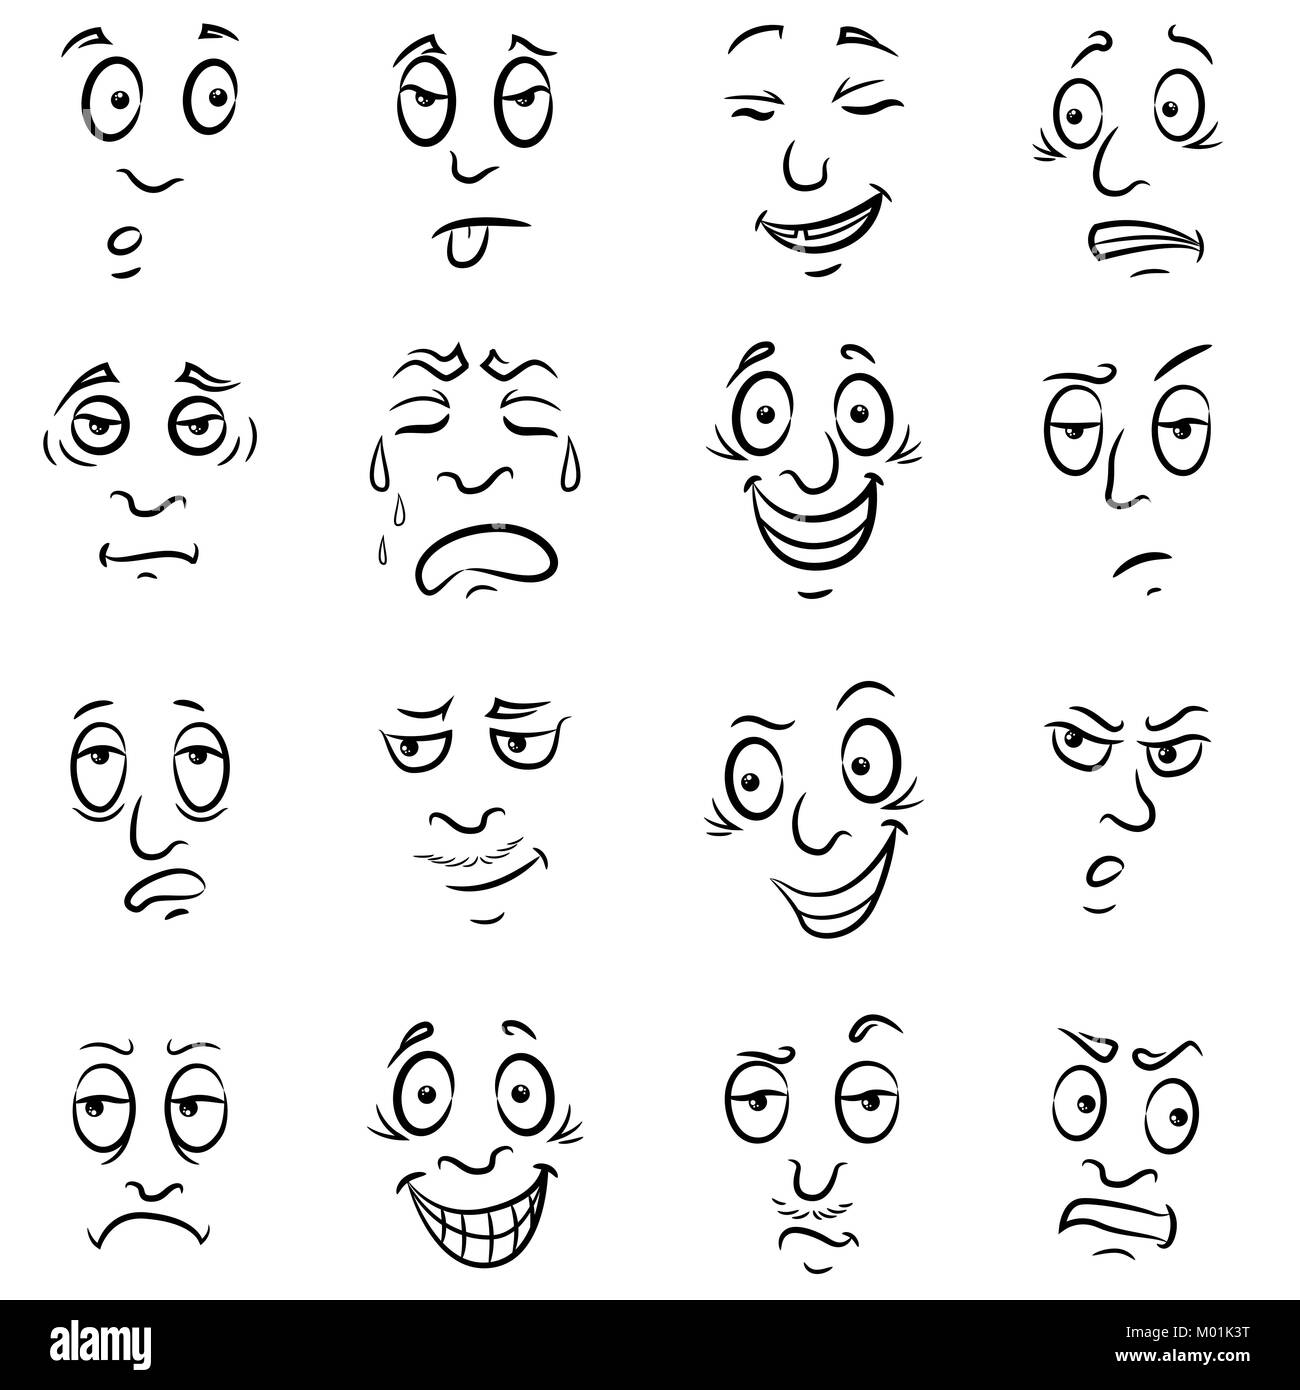 Ensemble de seize hommes drôles grimaces, esquisses cartoon vector décrit isolé sur fond blanc Illustration de Vecteur